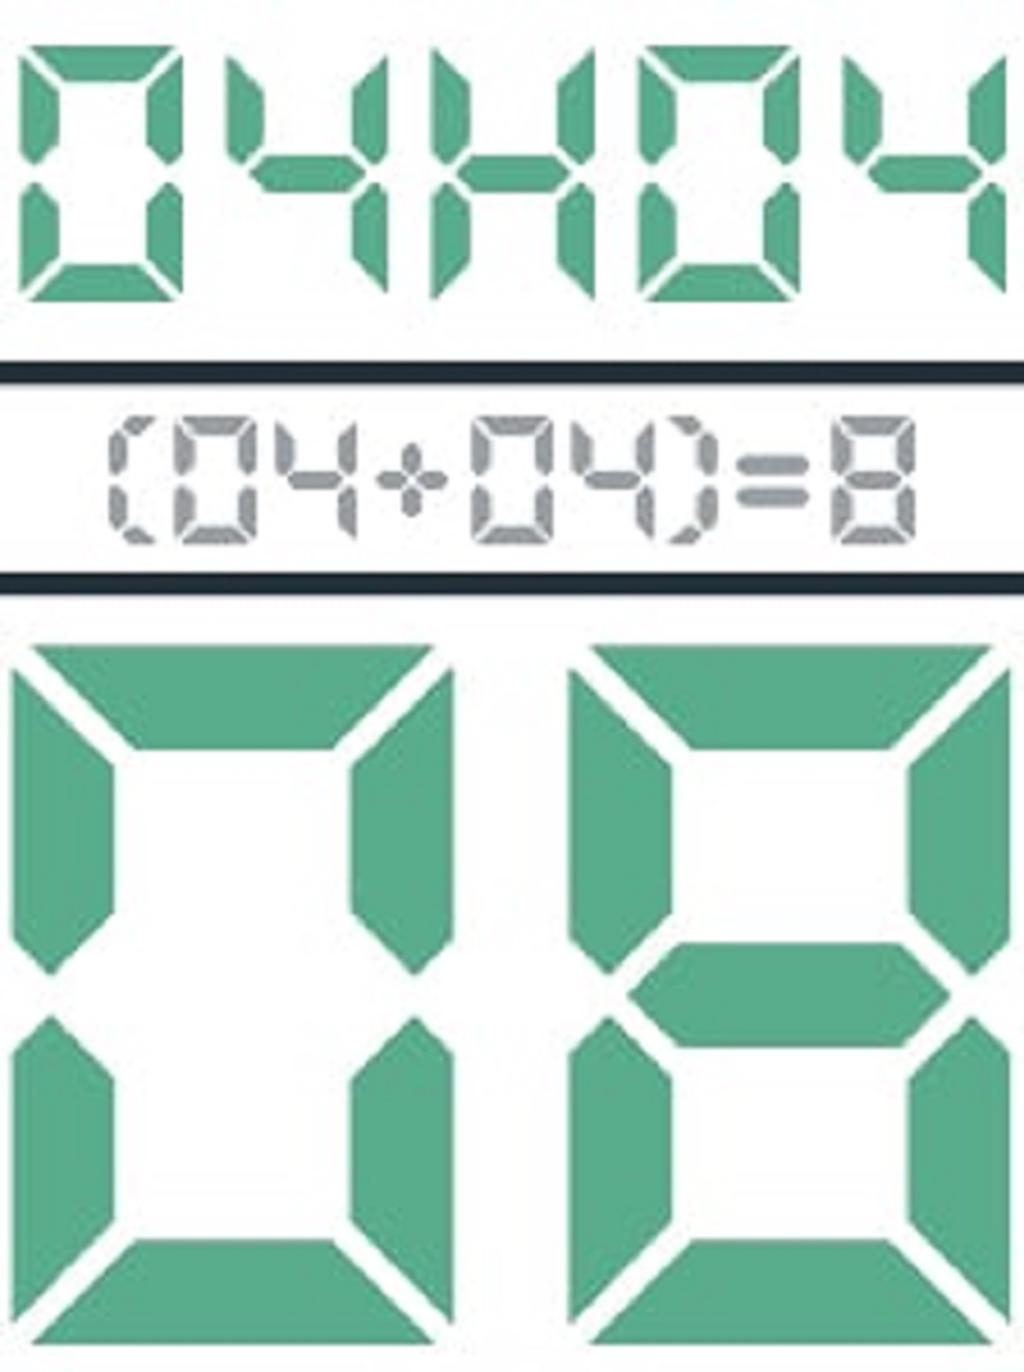 اهمیت ساعت آینه ای 04:04 در عددشناسی